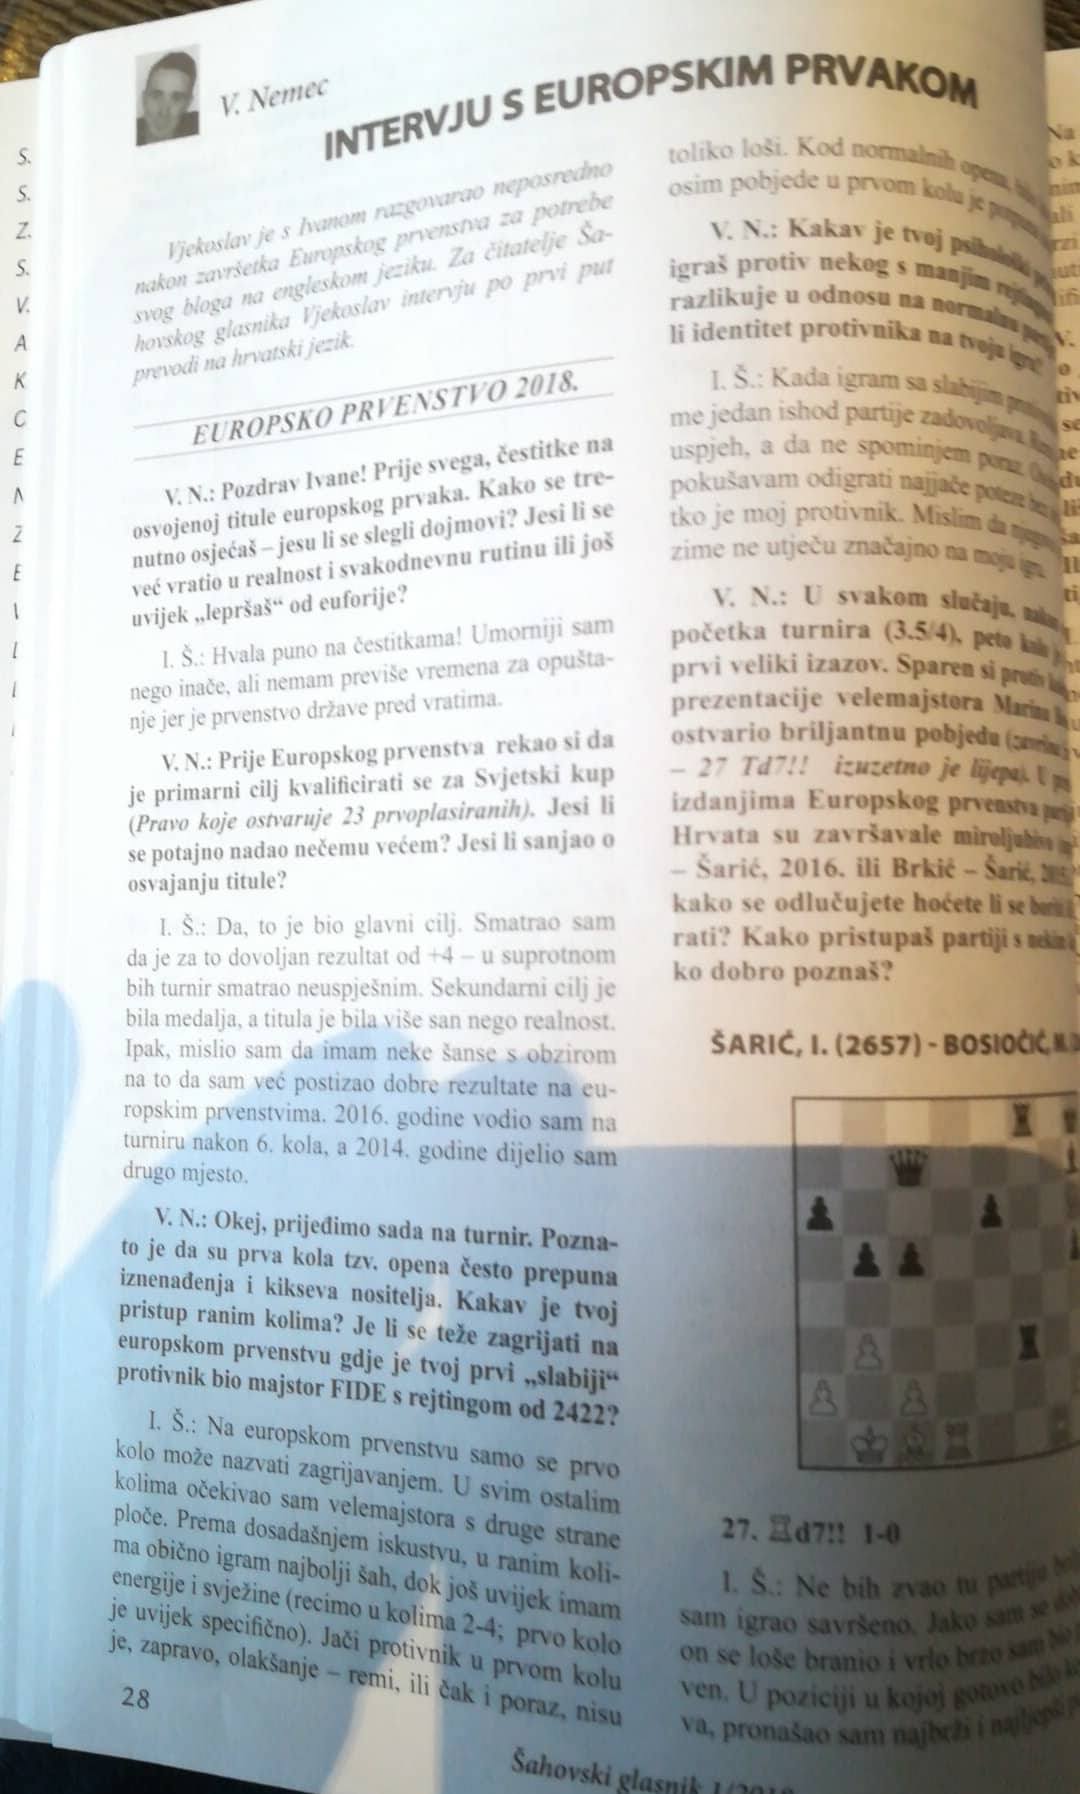 chessiq's Articles 